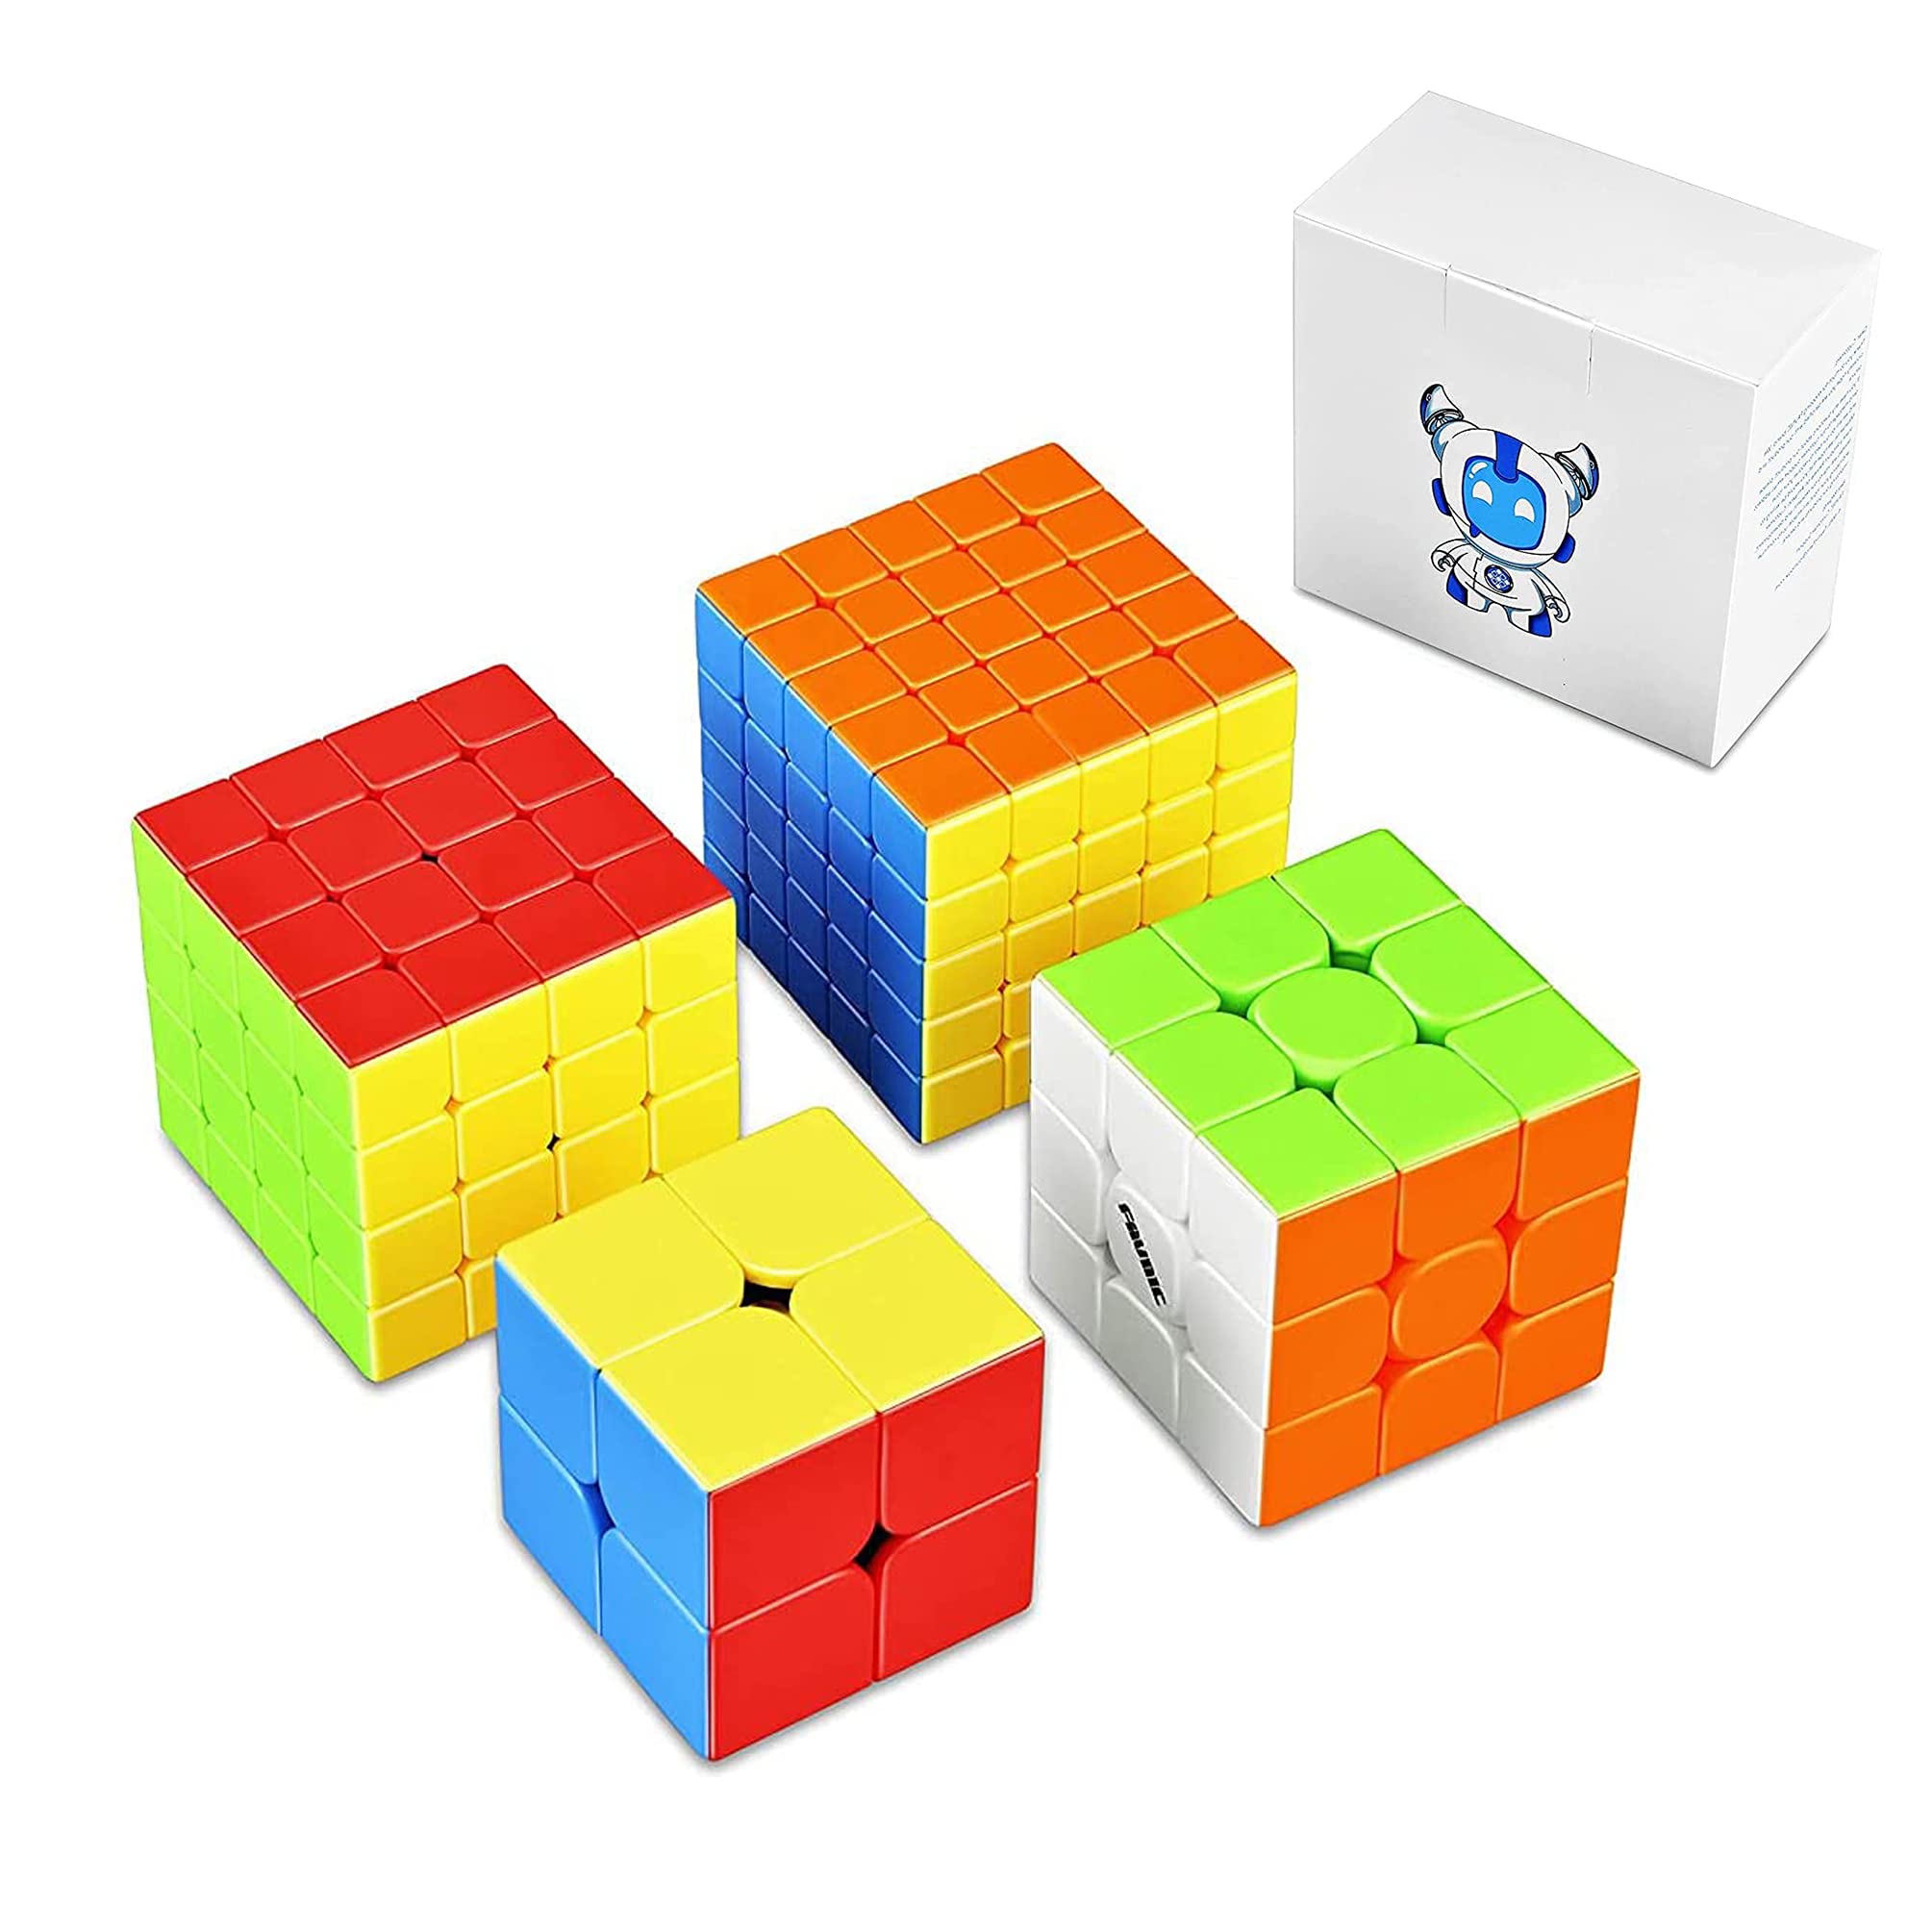 マジックキューブ 競技版 2×2、3×3、4×4、5×5 魔方 プロ向け 回転スムーズ 安定感 知育玩具 Magic Cube (4個セット)ステッカーレス 子供 ギフト クリスマス プレゼント